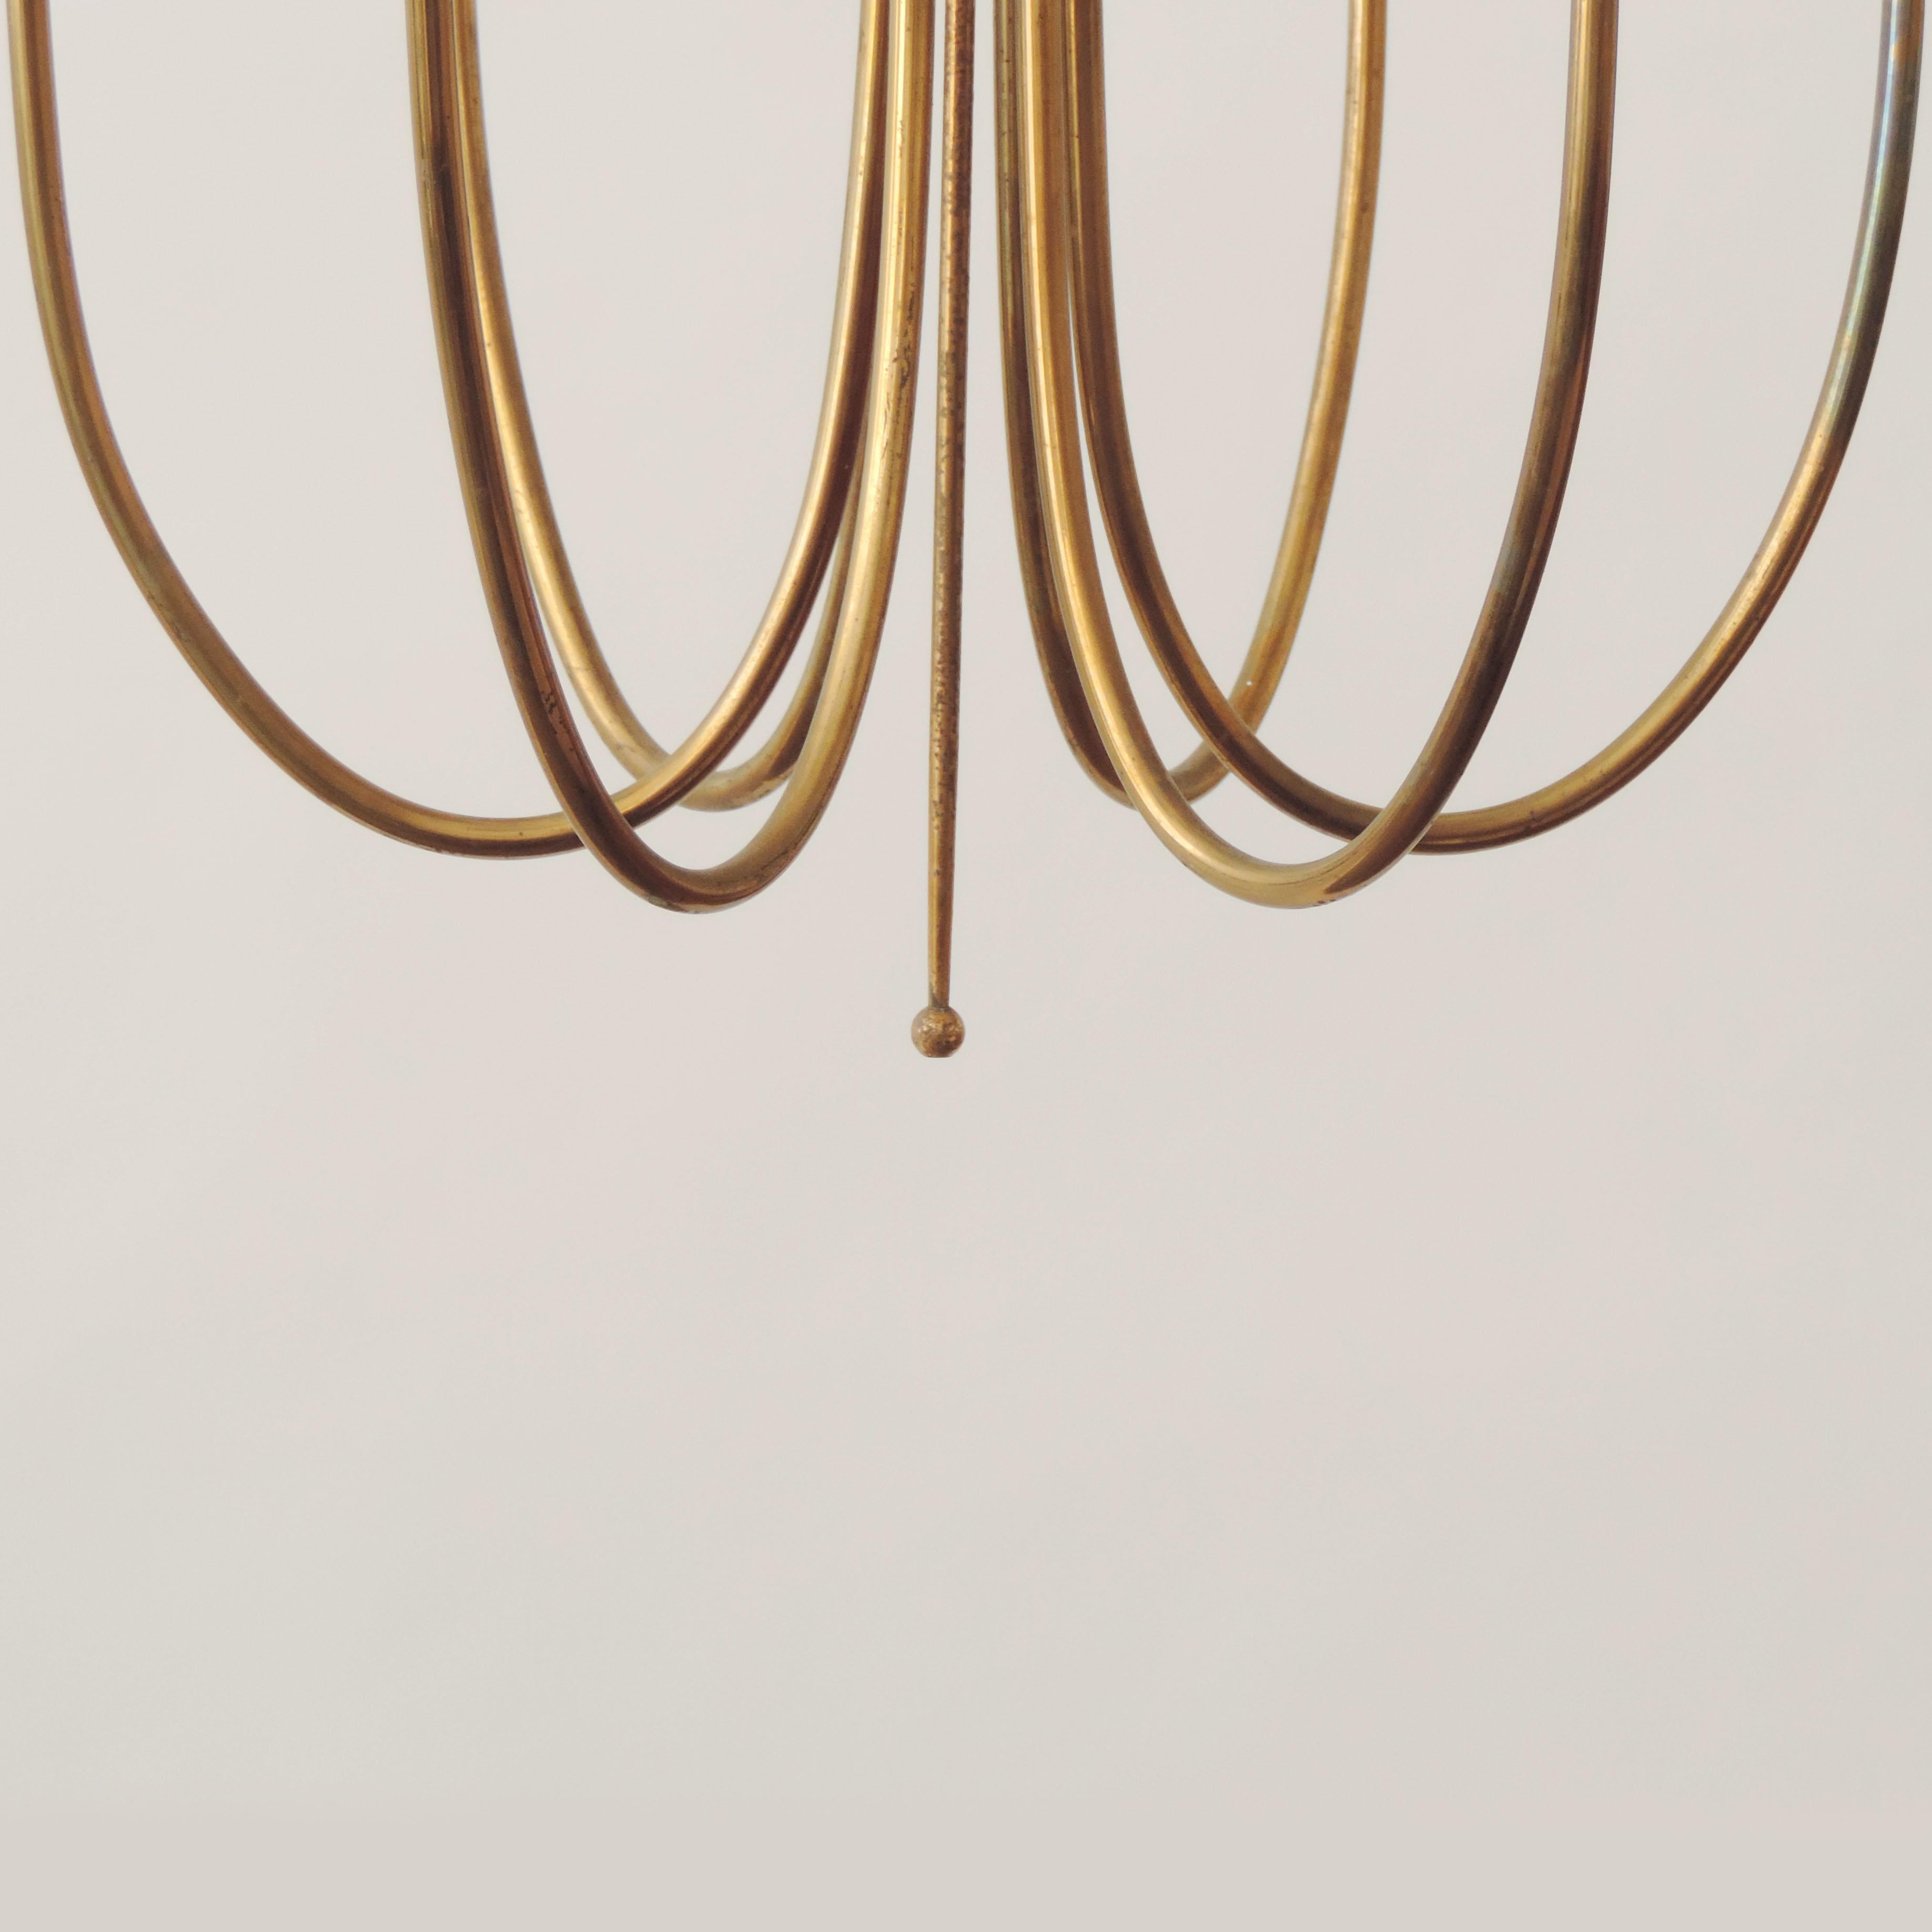 Italian 1950s ceiling lamp in brass.